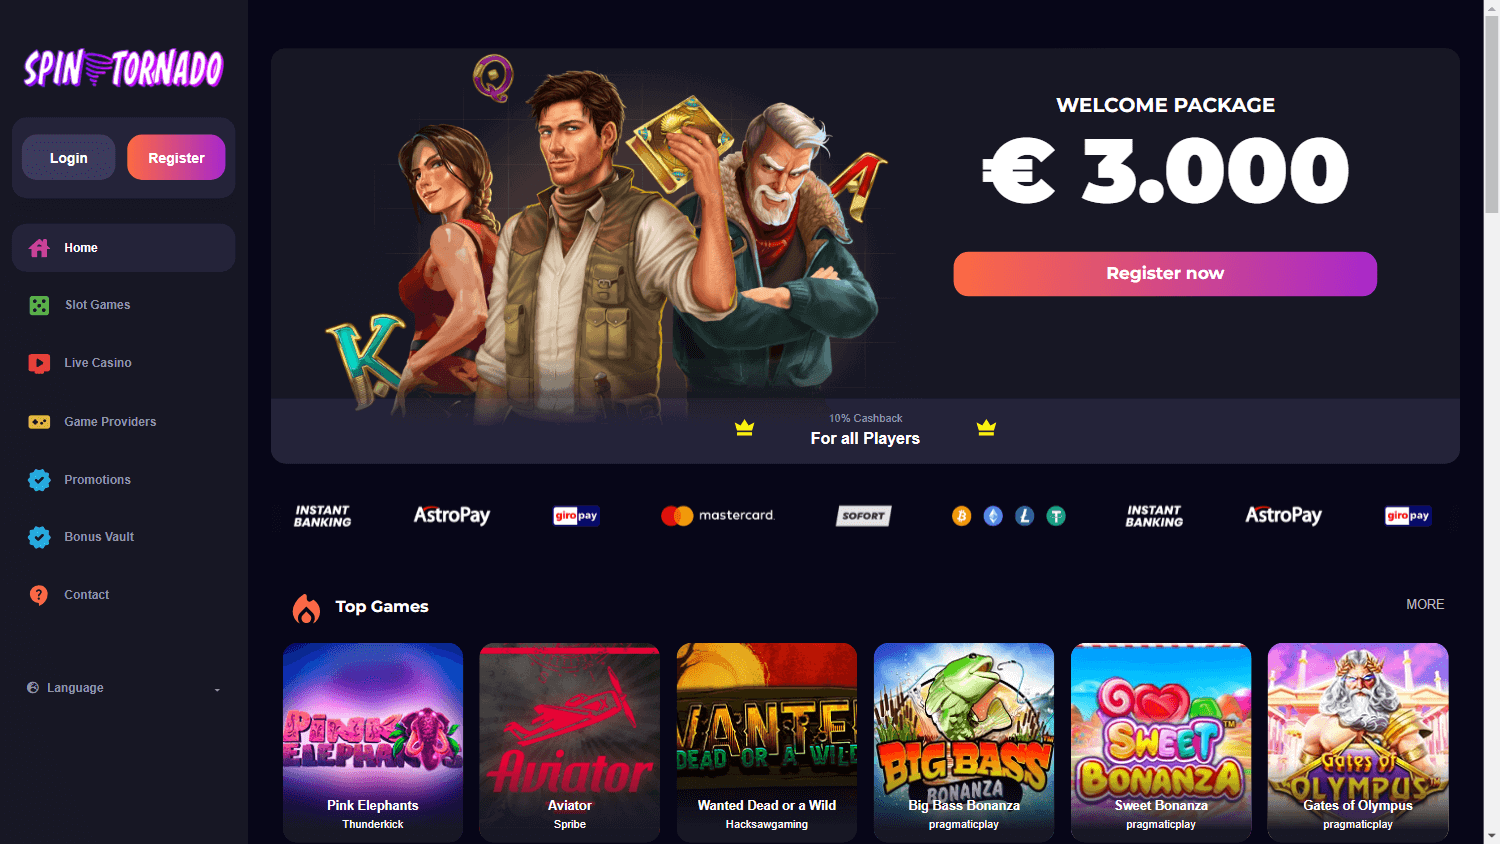 spintornado_casino_homepage_desktop